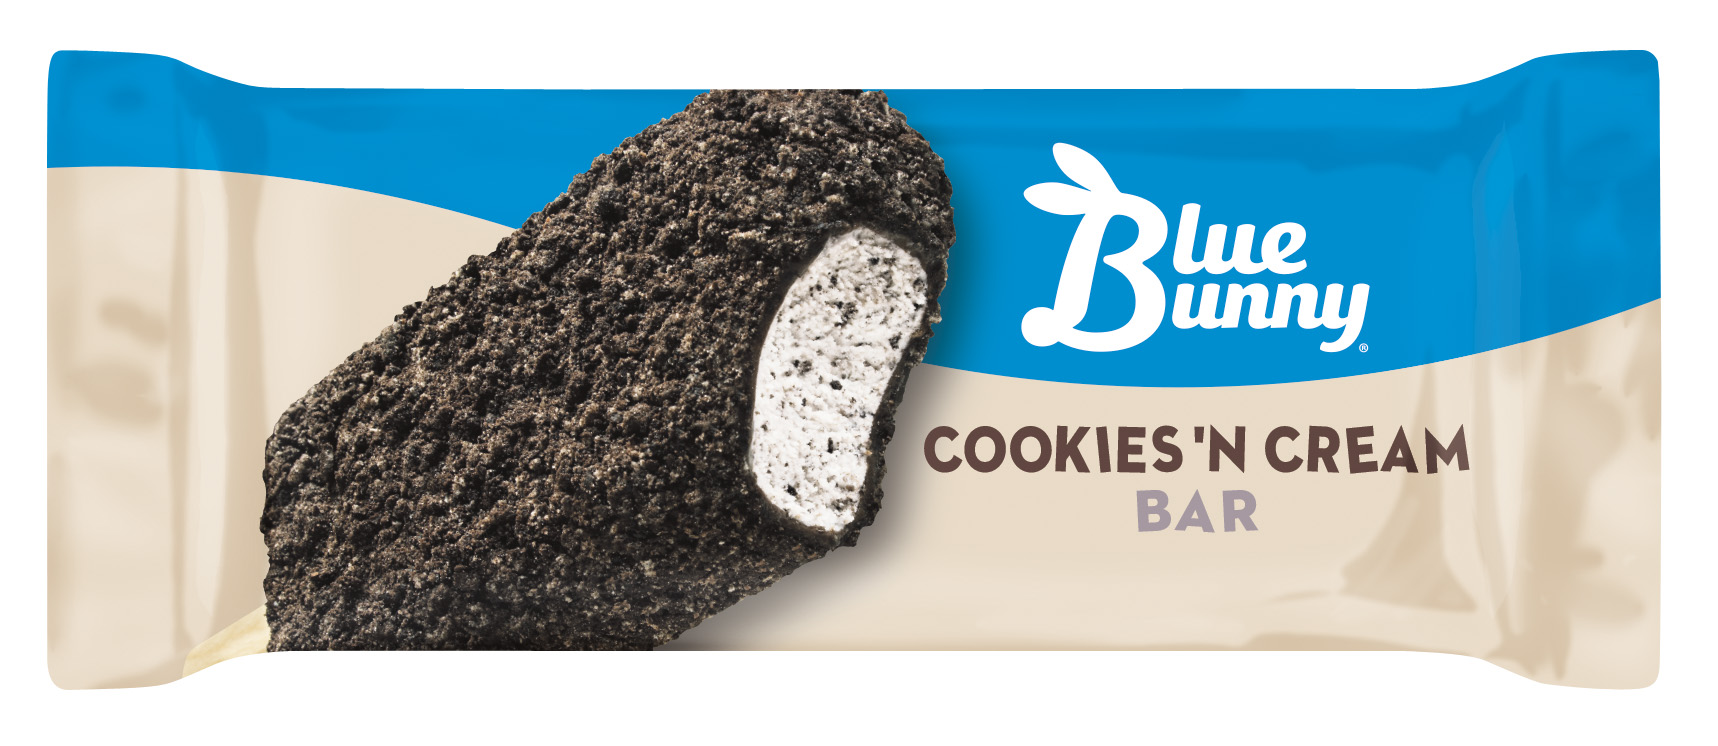 Order Blue Bunny Cookies 'n Cream Bar  food online from Huck store, Herrin on bringmethat.com